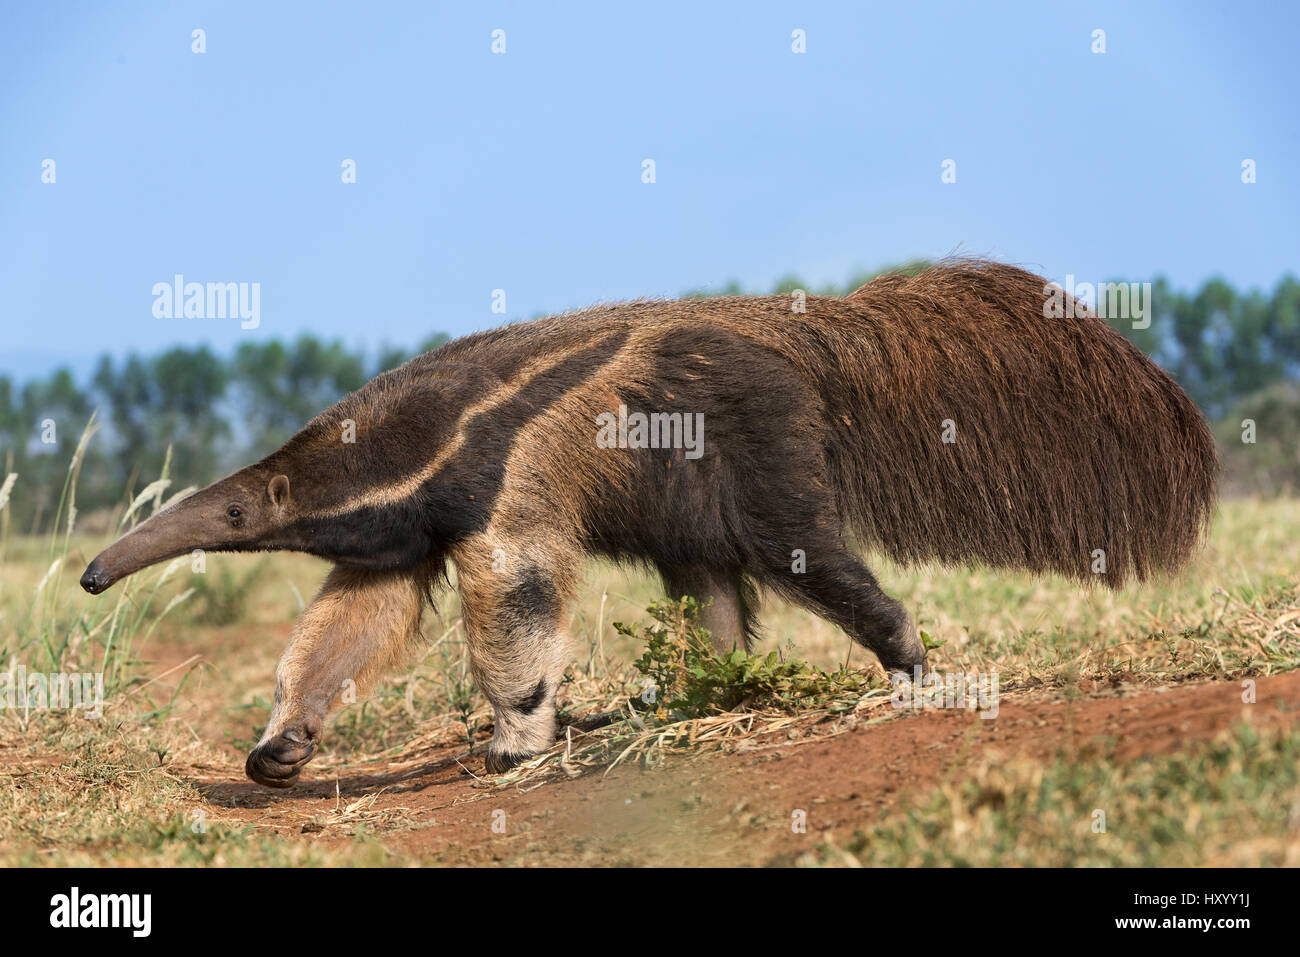 Adulto de oso hormiguero gigante (Myrmecophaga tridactyla) forrajeando. El Pantanal Sur, Moto Grosso do Sul, Brasil. De septiembre. Foto de stock